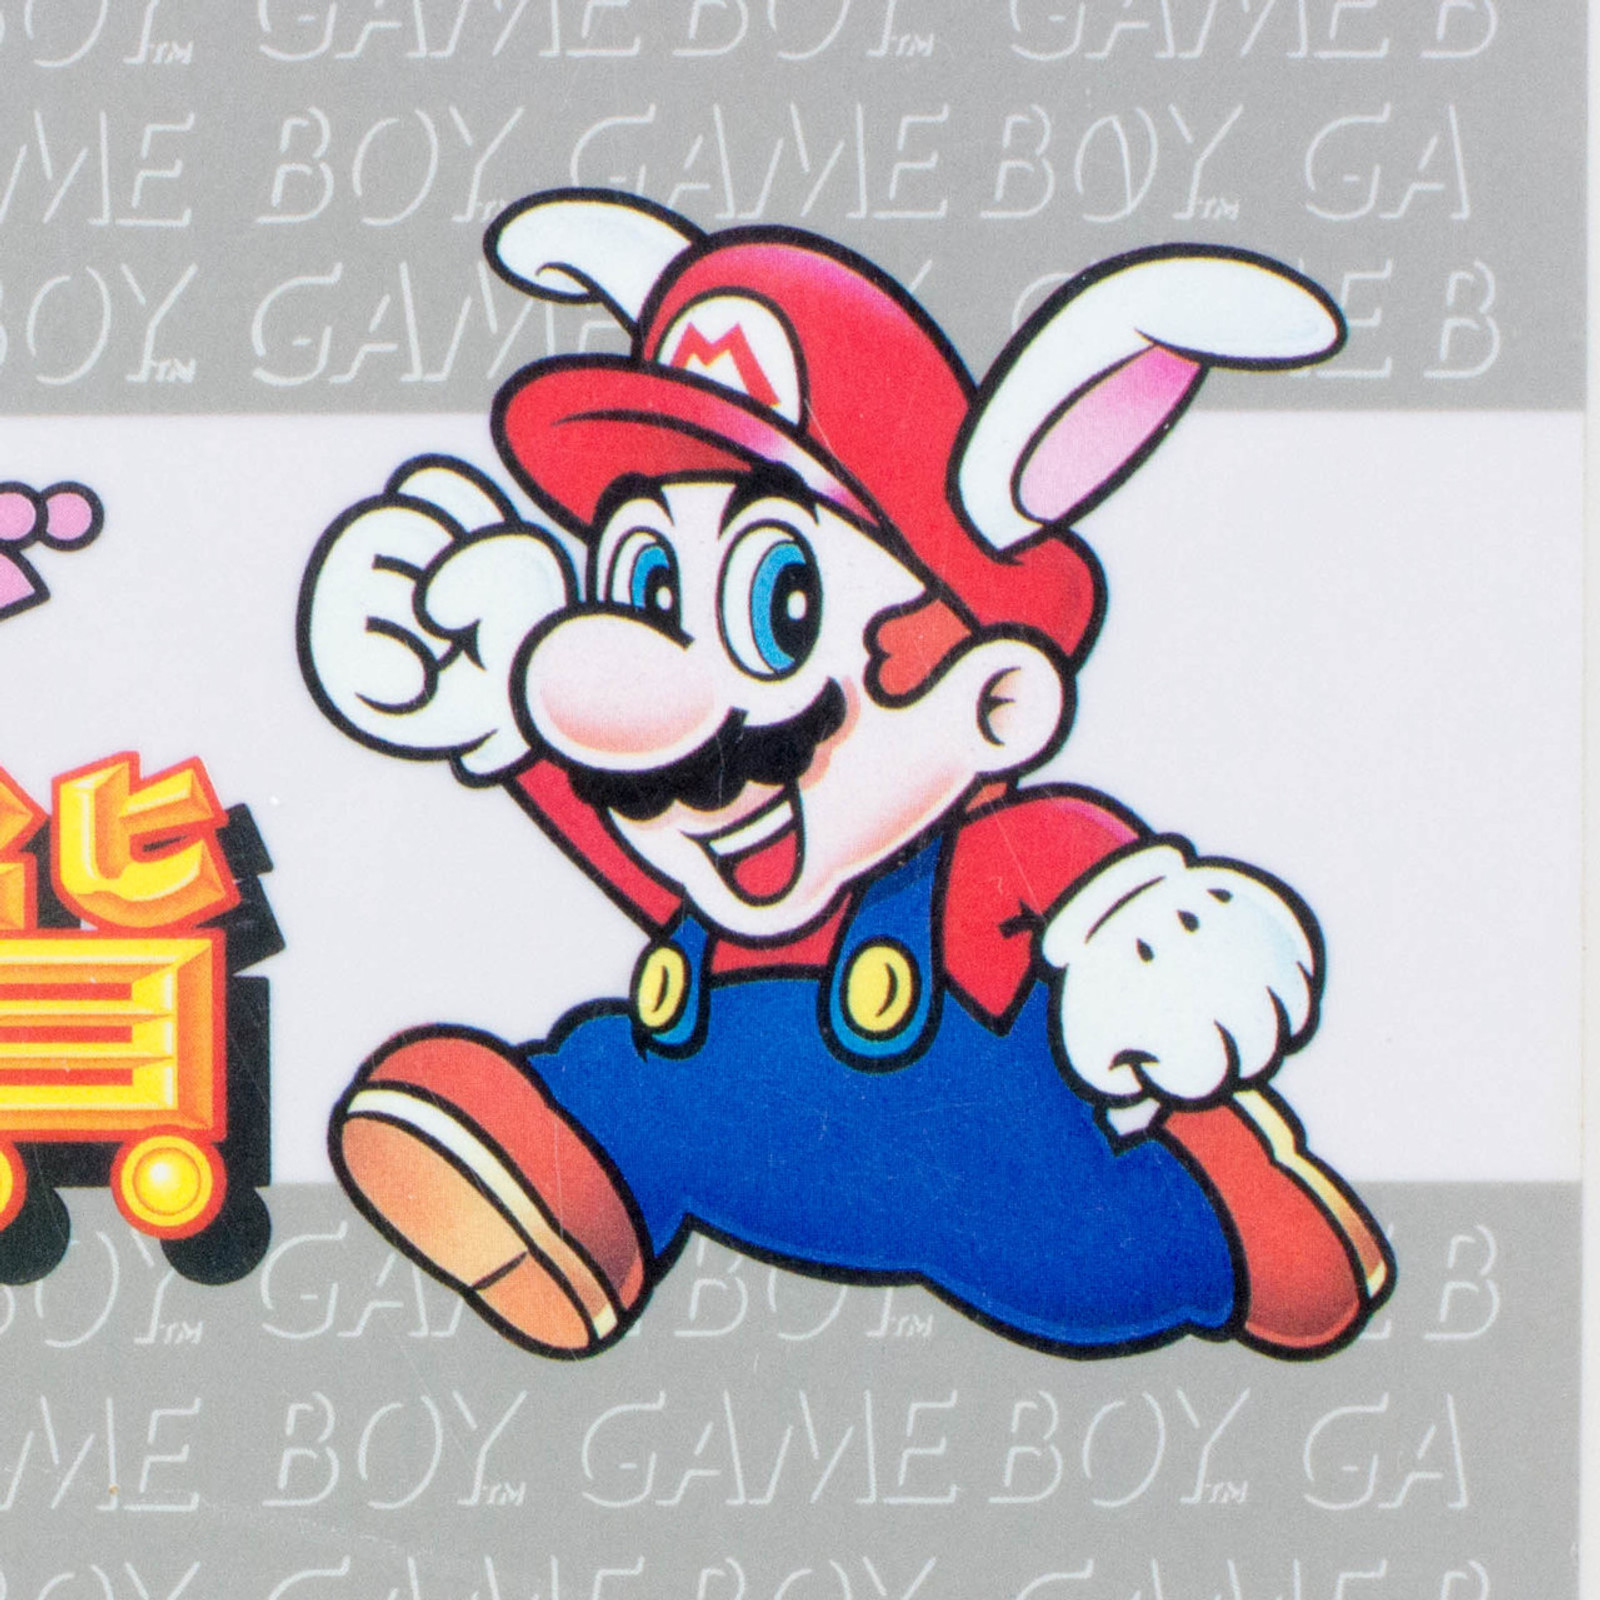 Retro RARE! GAME BOY Nintendo Box Case Super Mario Land JAPAN GAME